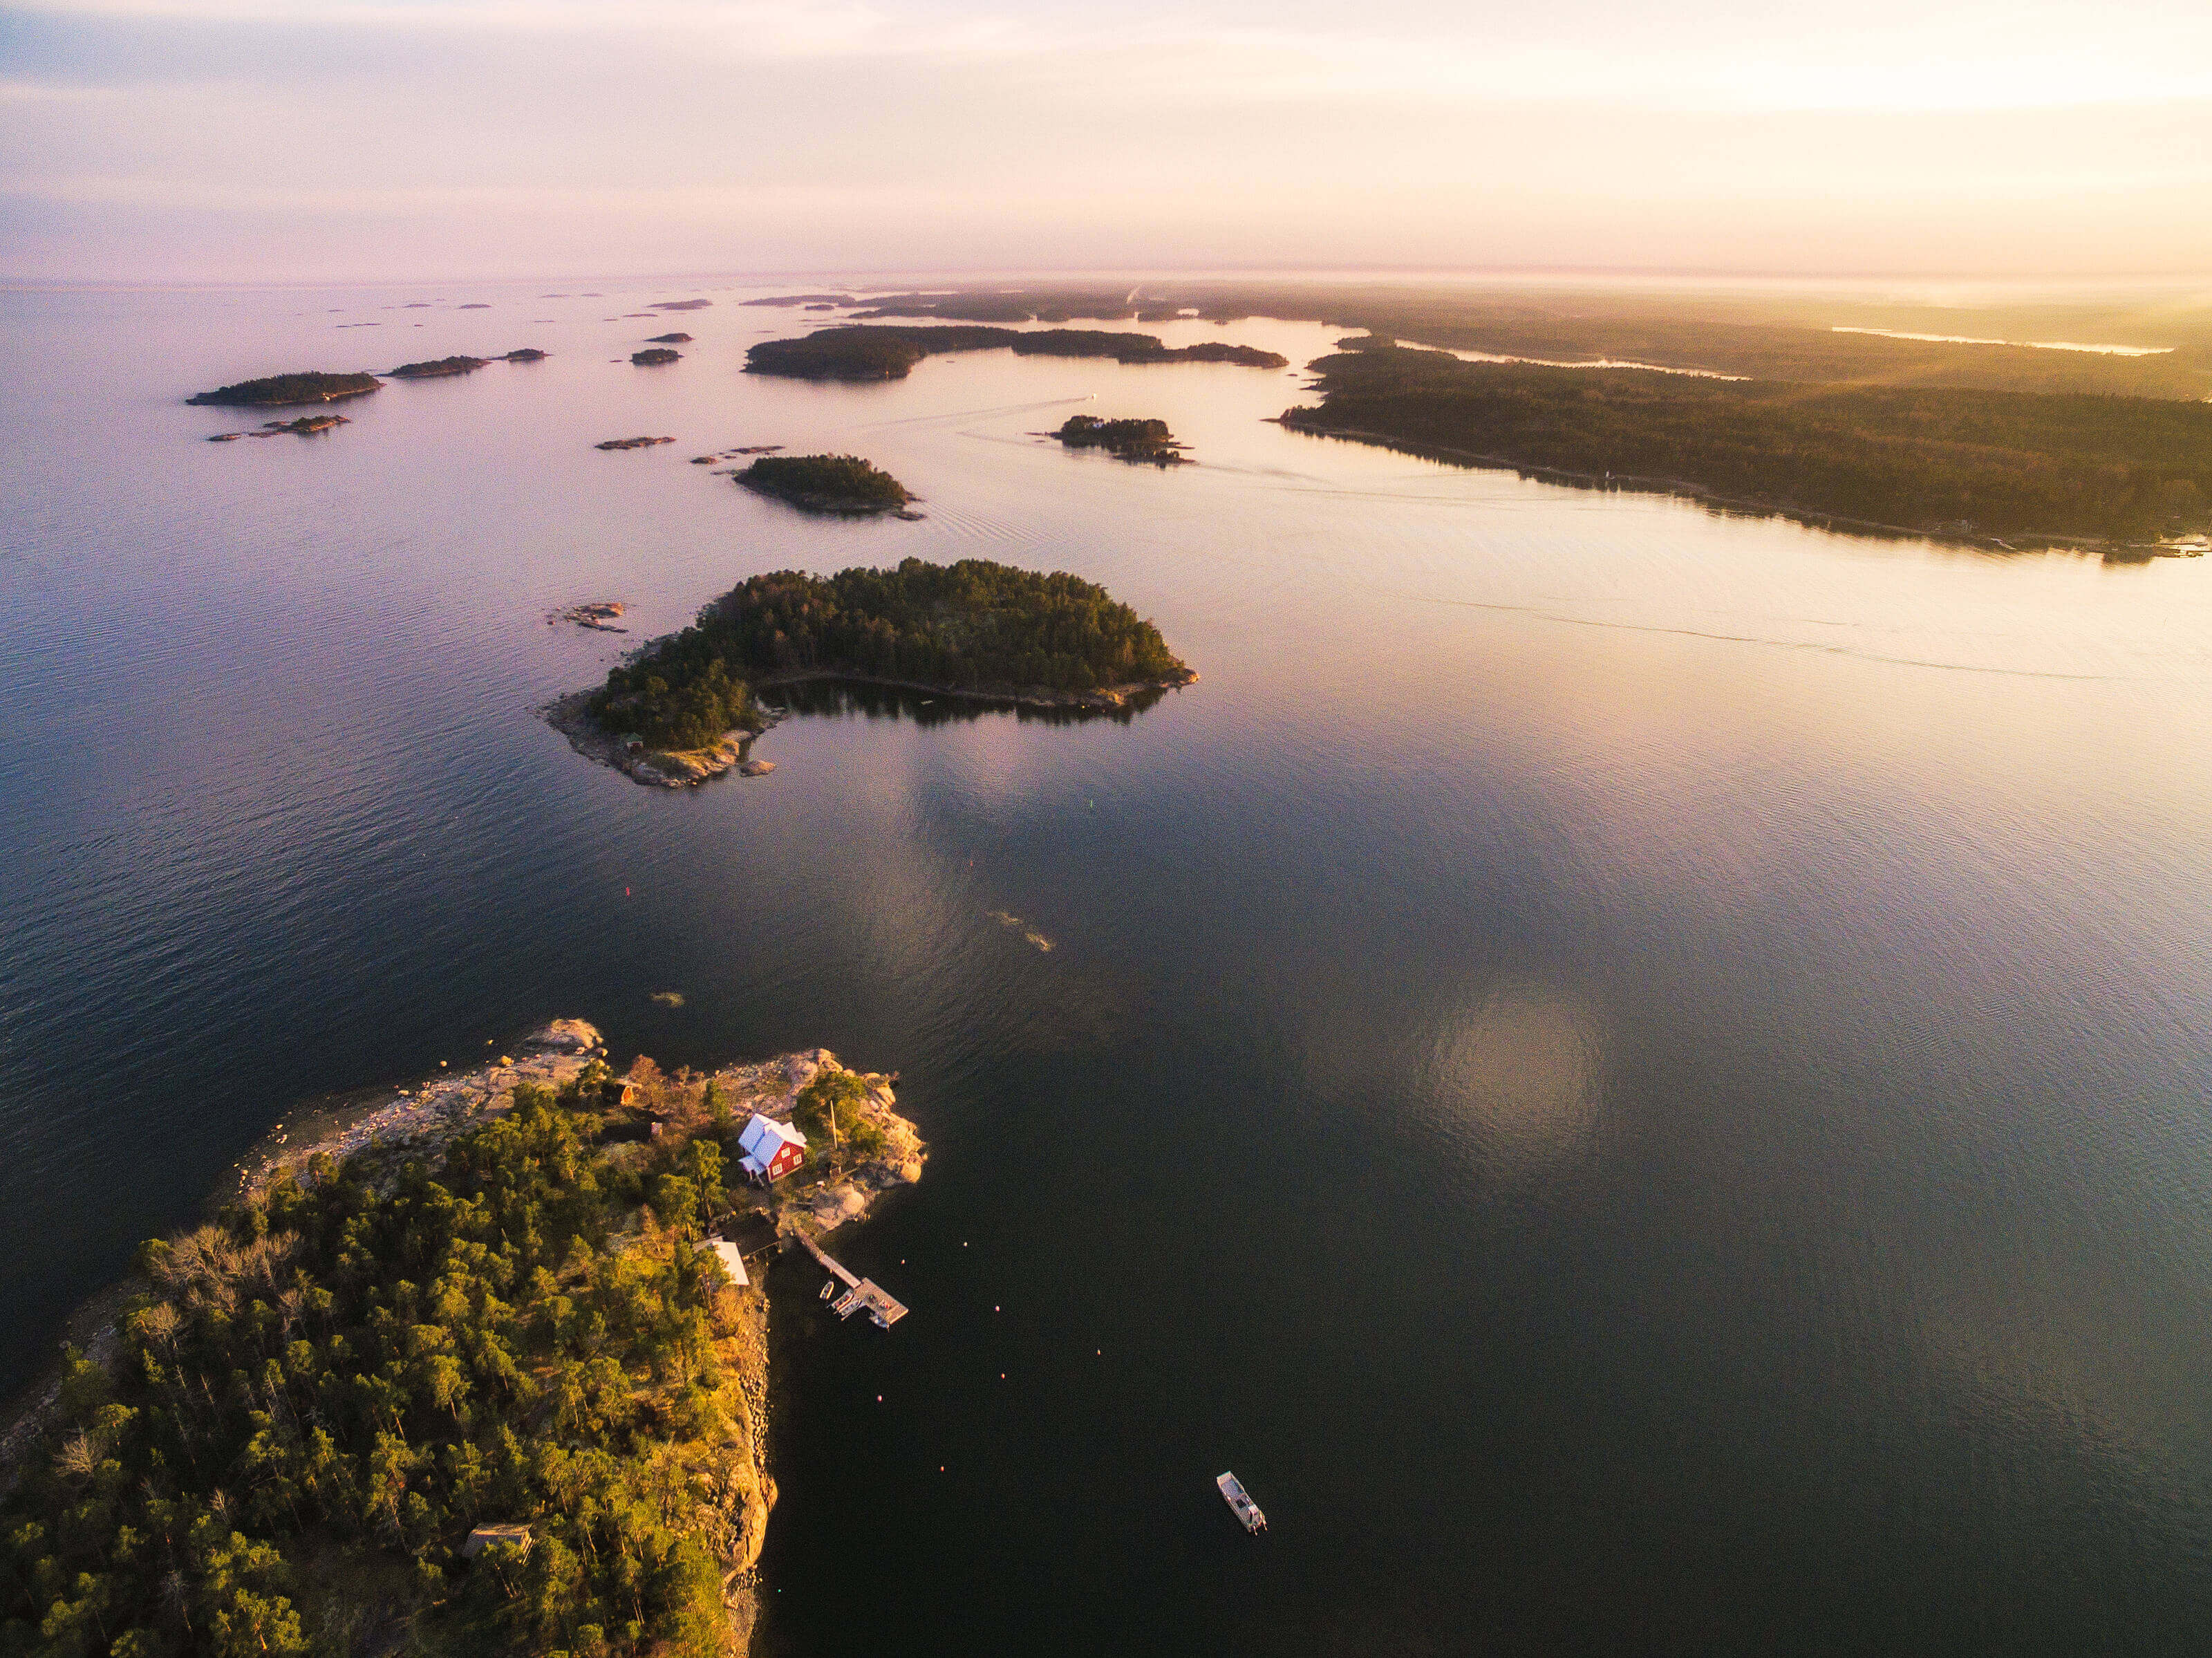 An aerial view over archipelago near Espoo, Finland.